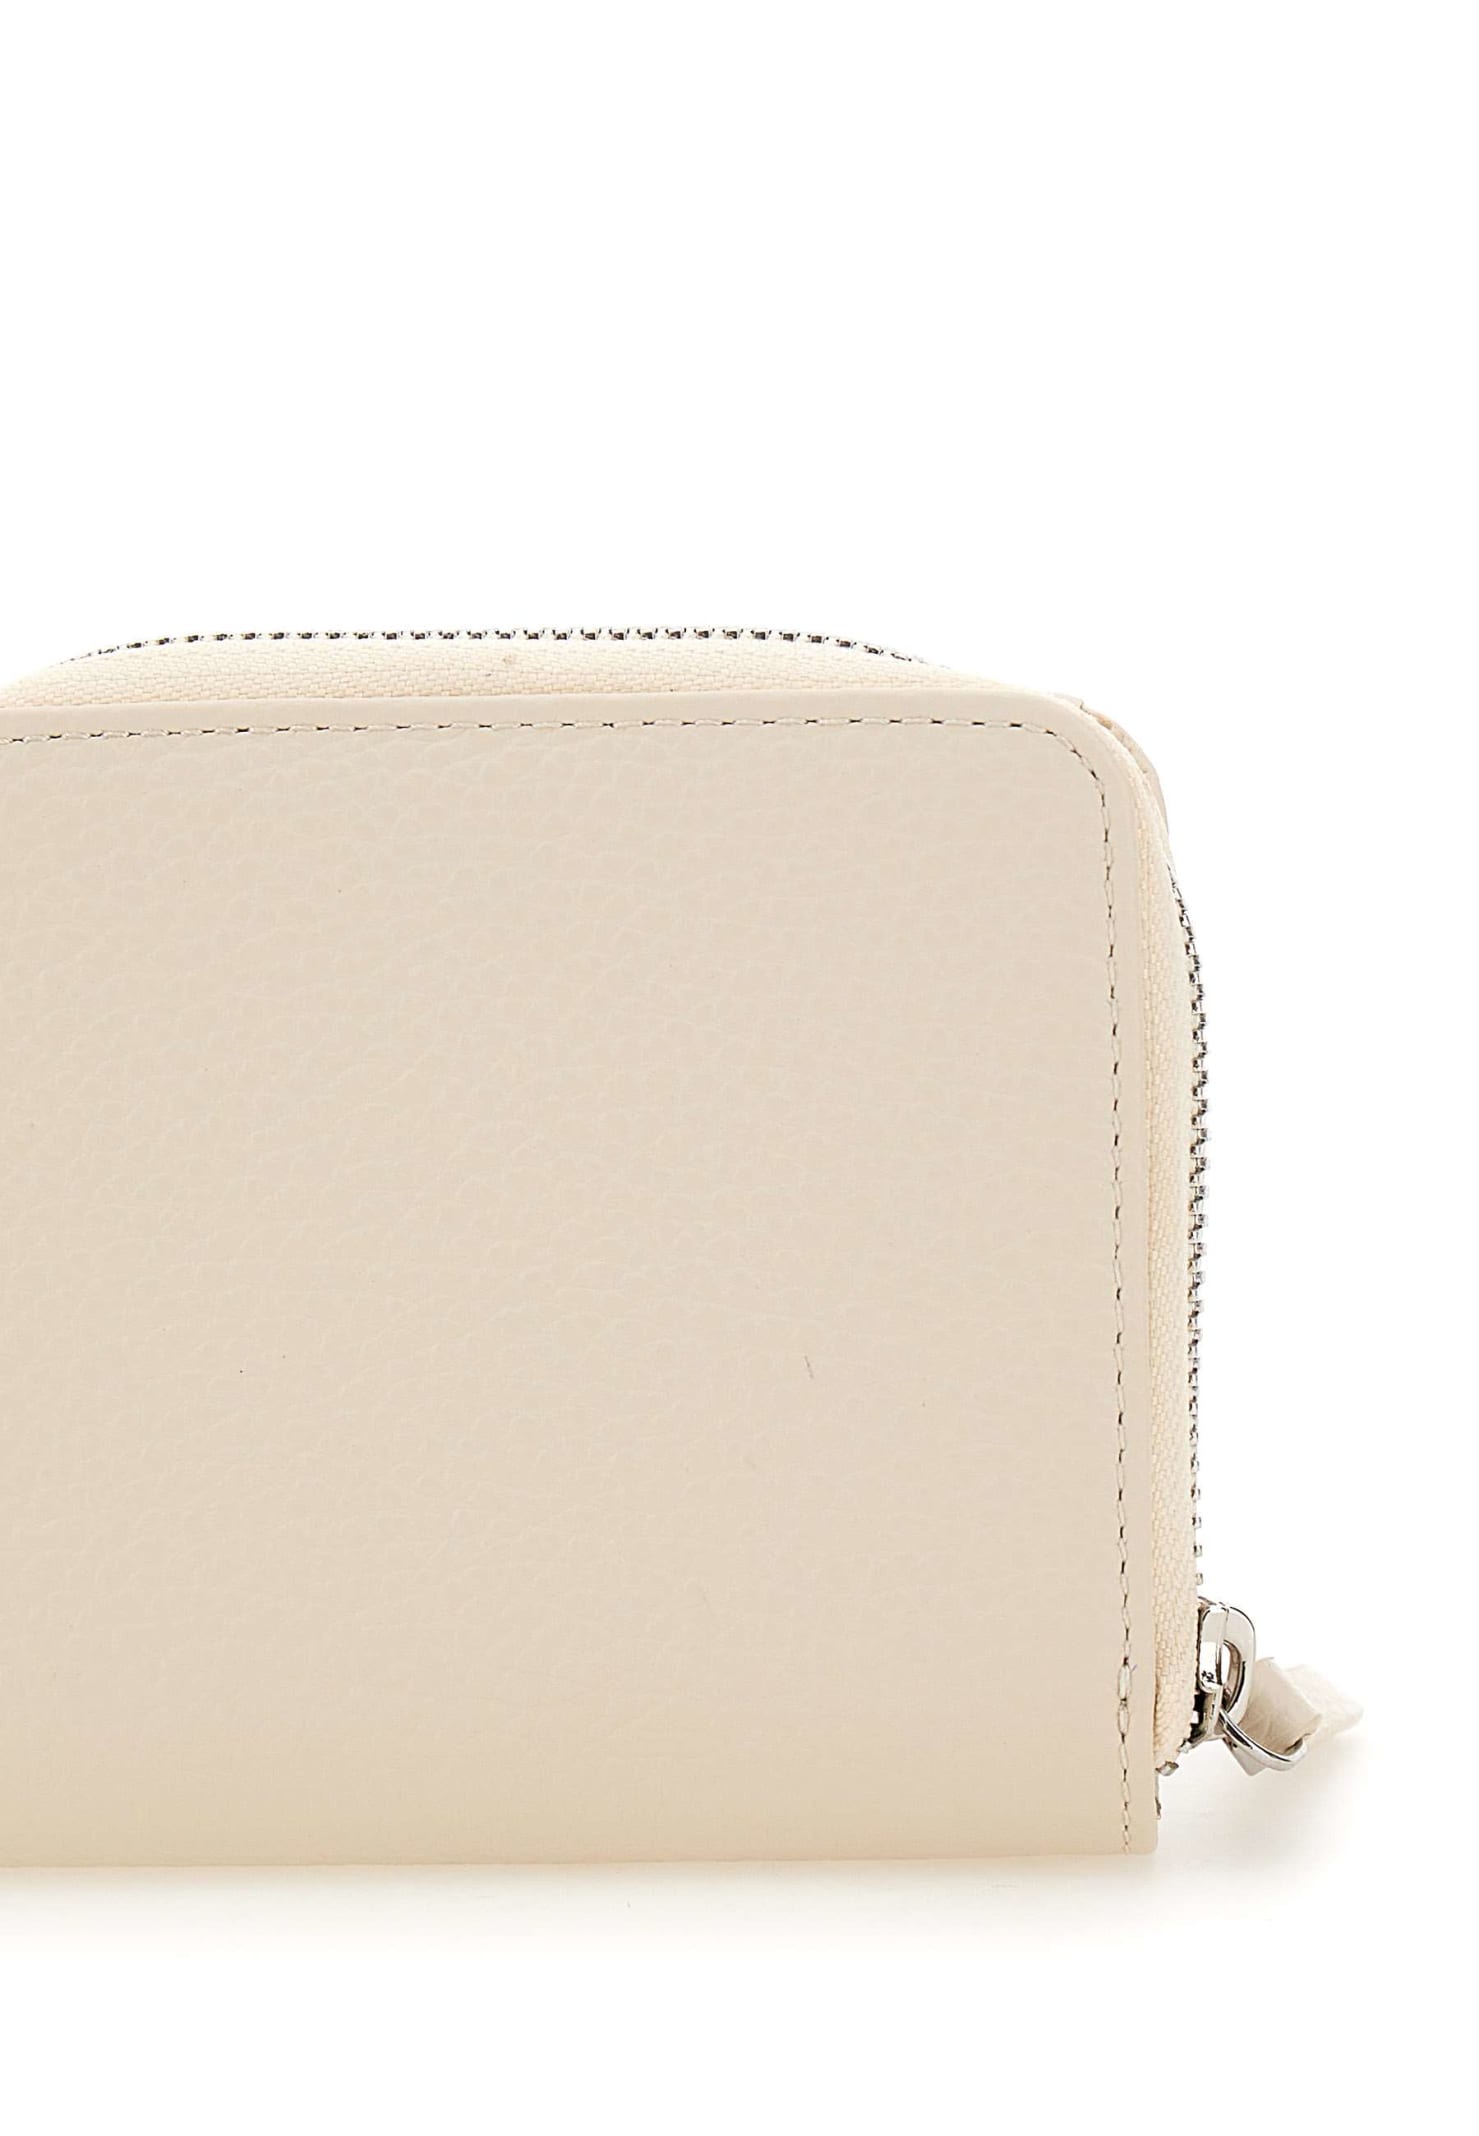 Shop Gianni Chiarini Leather Wallet In White